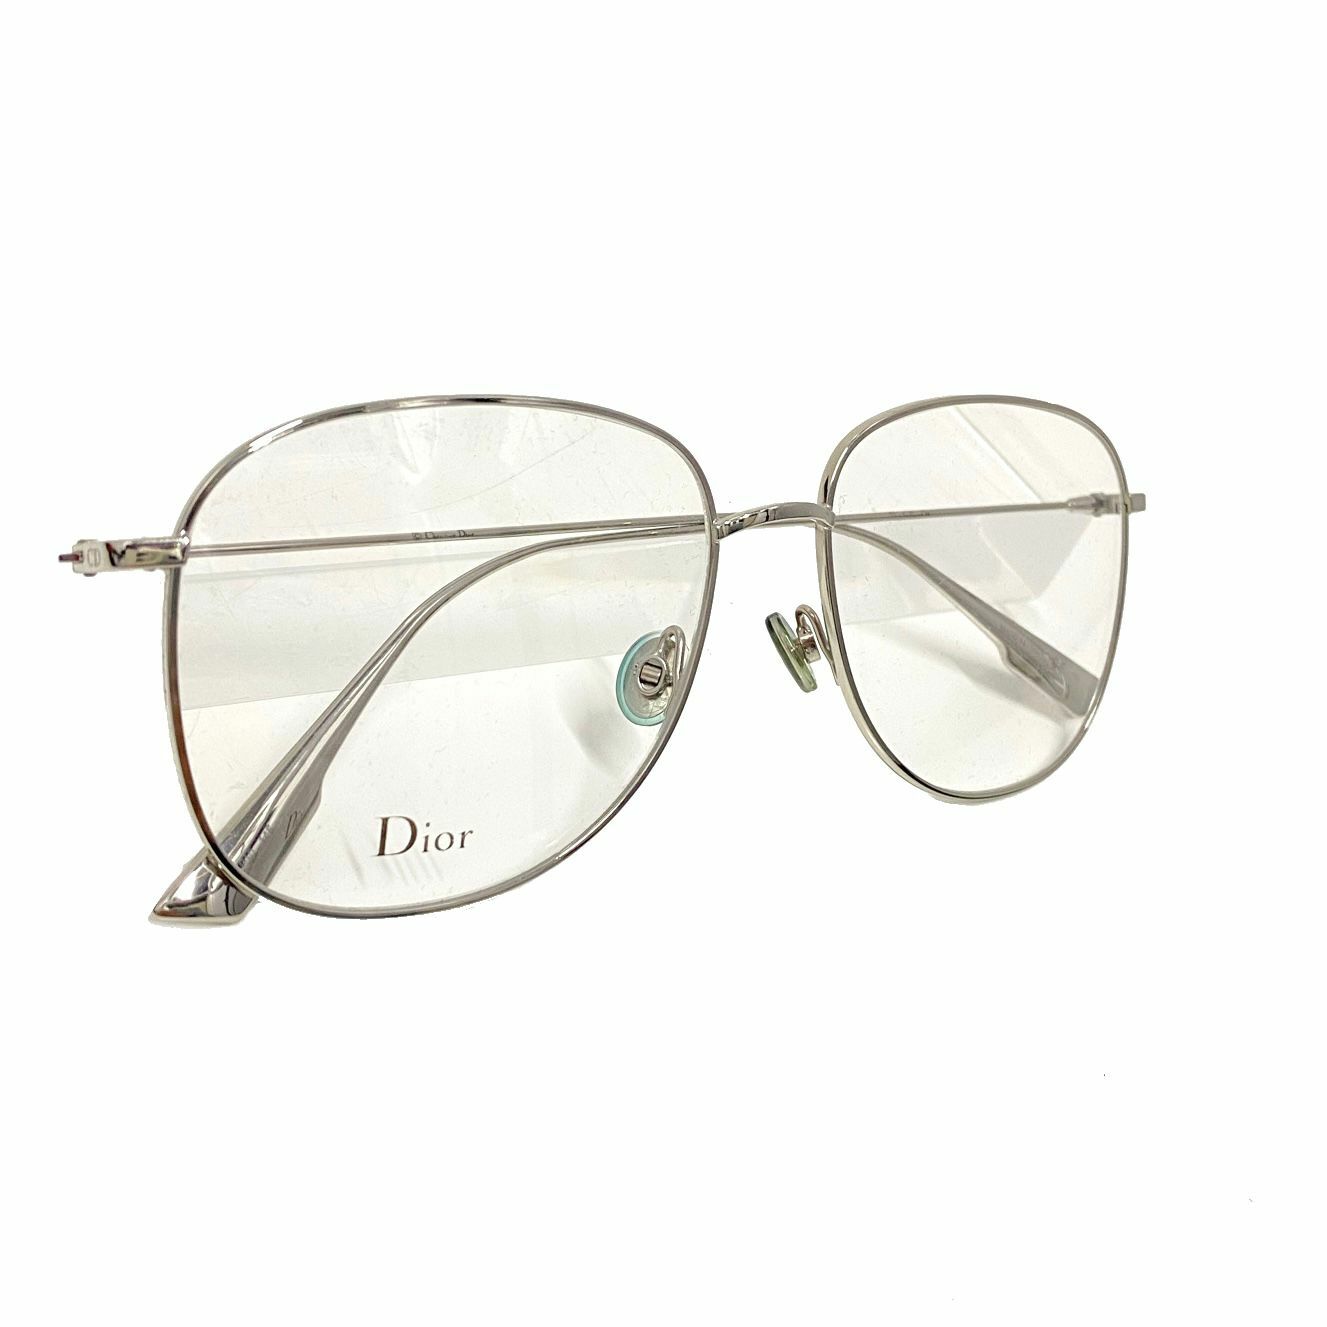 全新DIOR眼鏡CC009108 #08-56-010 圓形銀框/銀色幼邊金屬鏡架#男女同款 